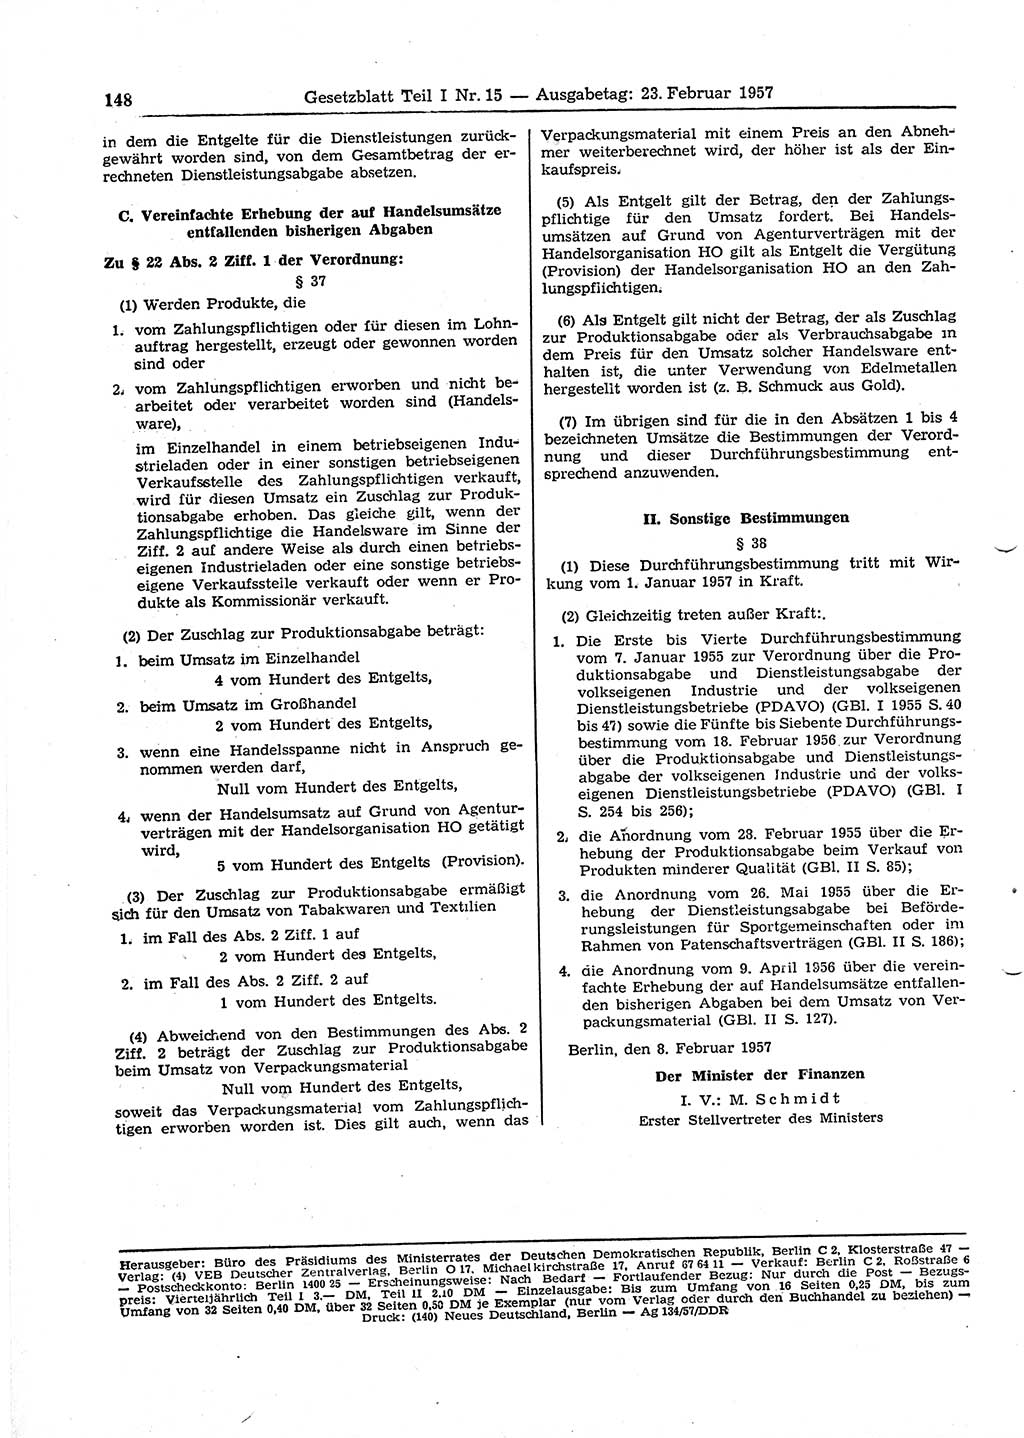 Gesetzblatt (GBl.) der Deutschen Demokratischen Republik (DDR) Teil Ⅰ 1957, Seite 148 (GBl. DDR Ⅰ 1957, S. 148)